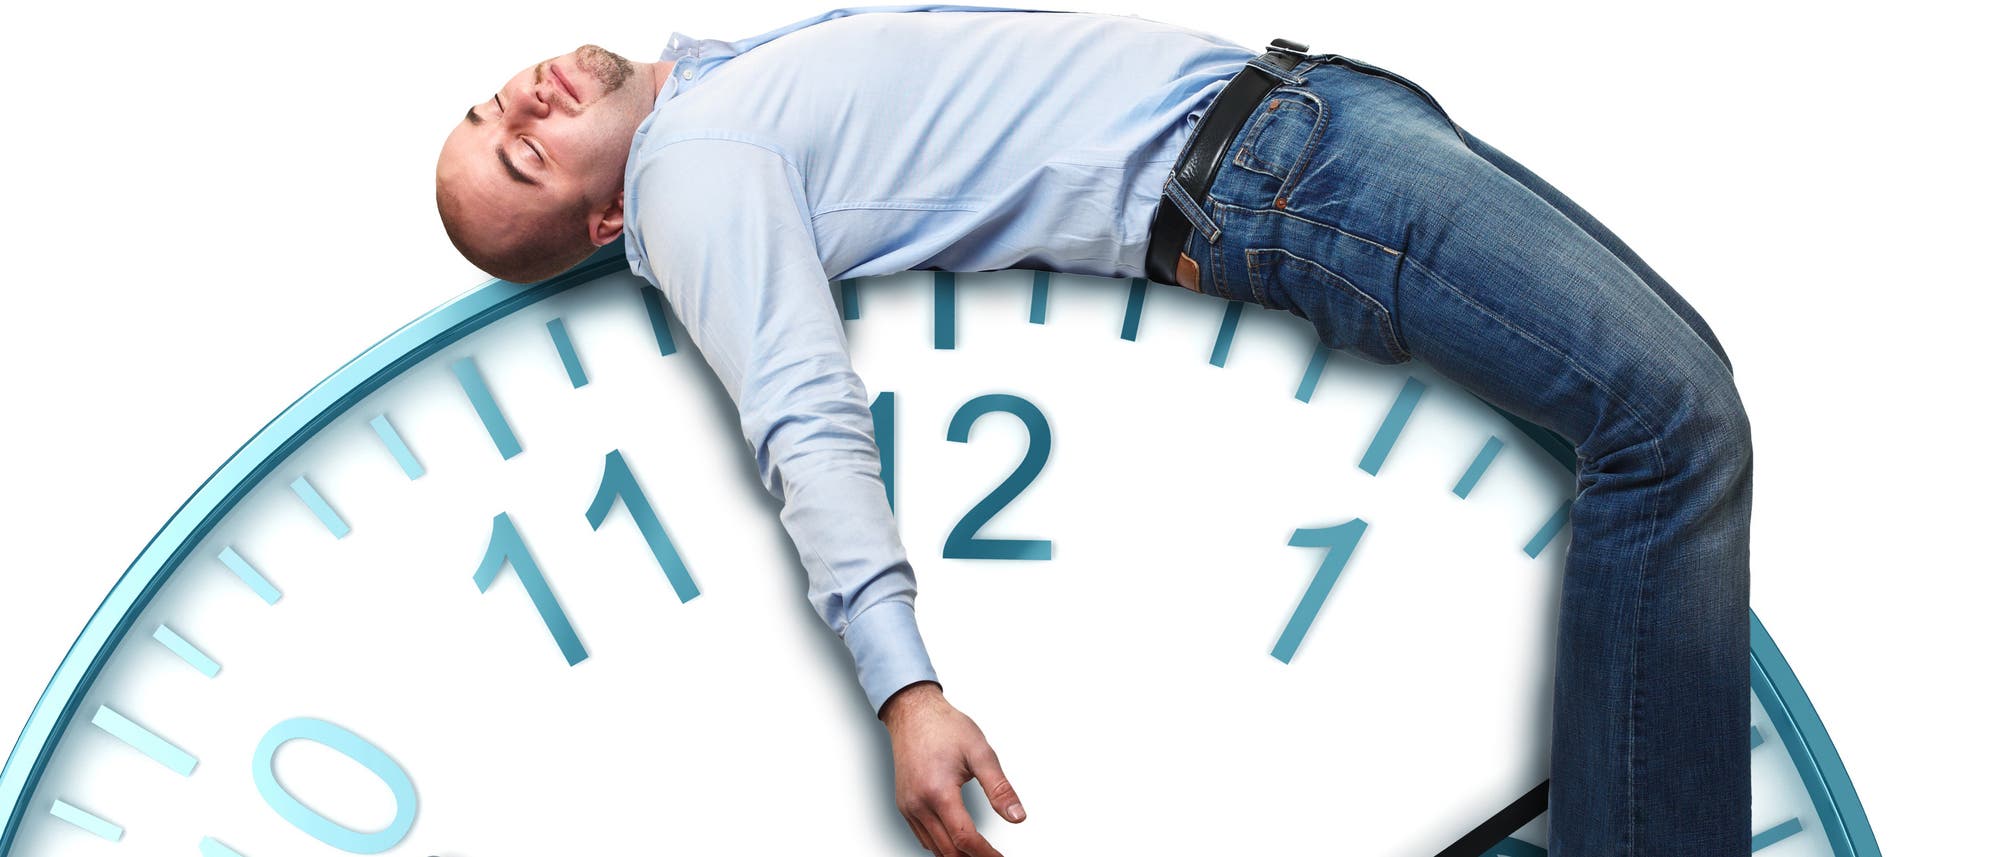 Auf einer riesigen Uhr liegt ein müder Mann und schläft